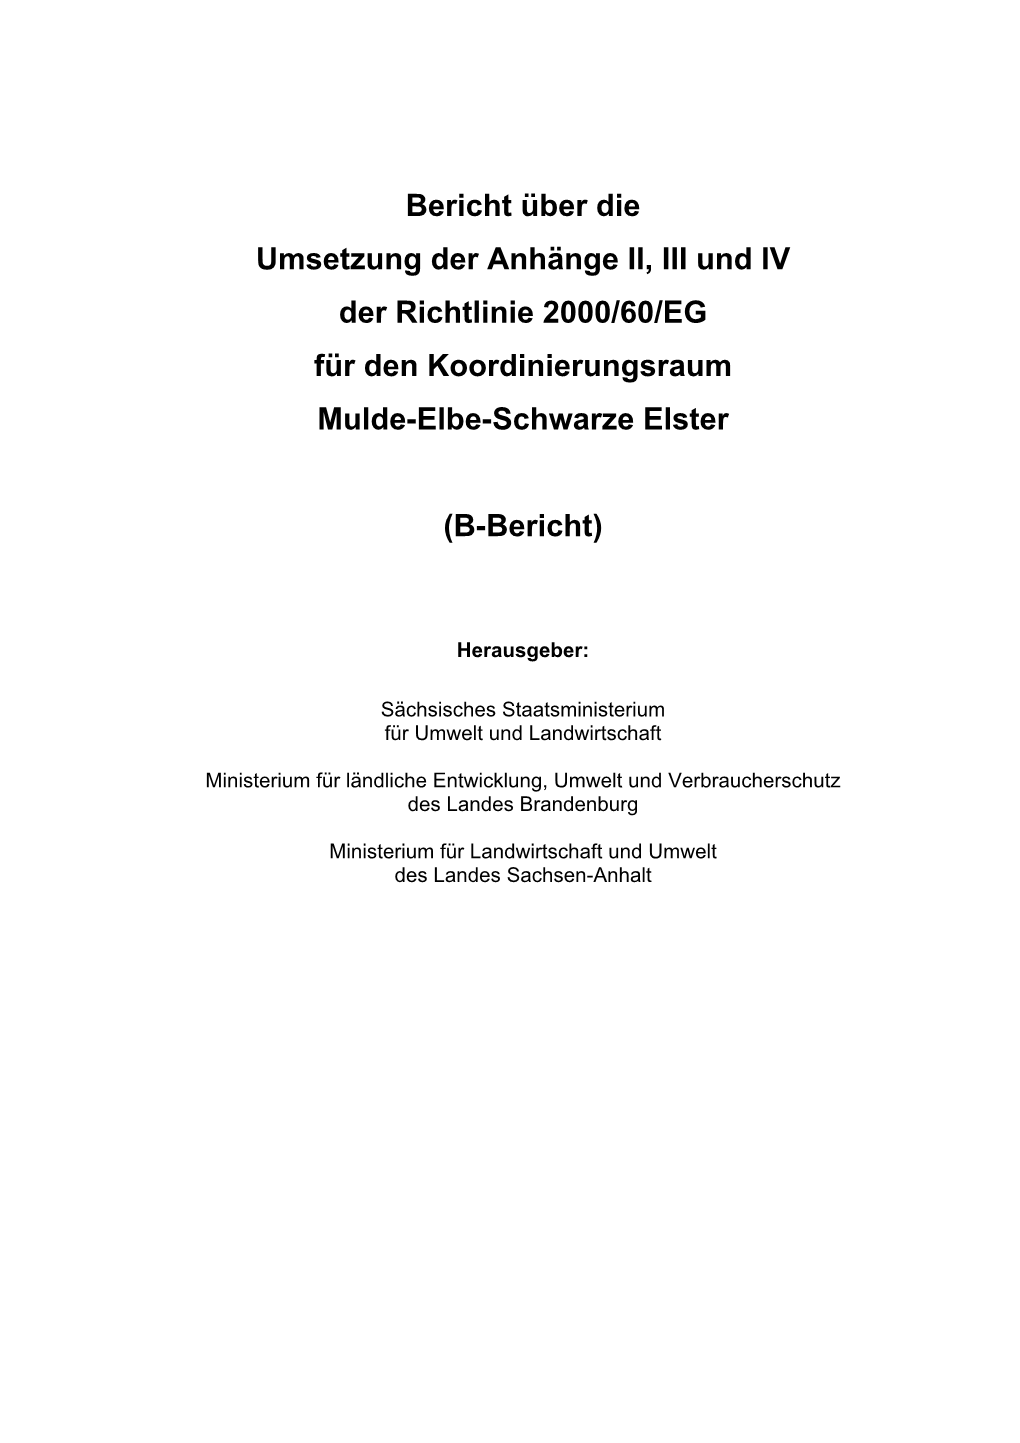 B-Bericht Zum Koordinierungsraum Mulde-Elbe-Schwarze Elster